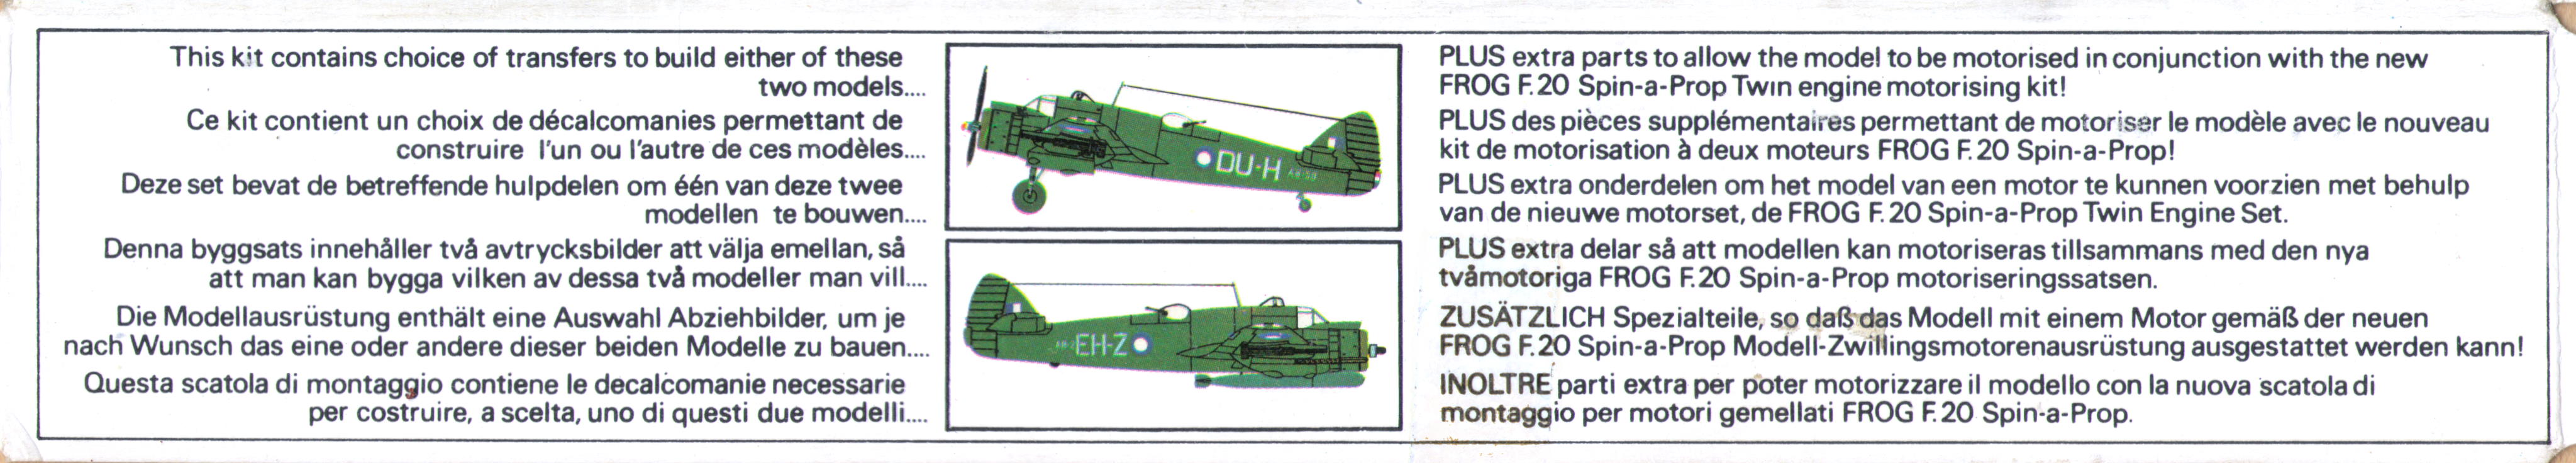  Верх коробки FROG F291 Beaufighter Mk.21 Anti-shipping Strike Fighter